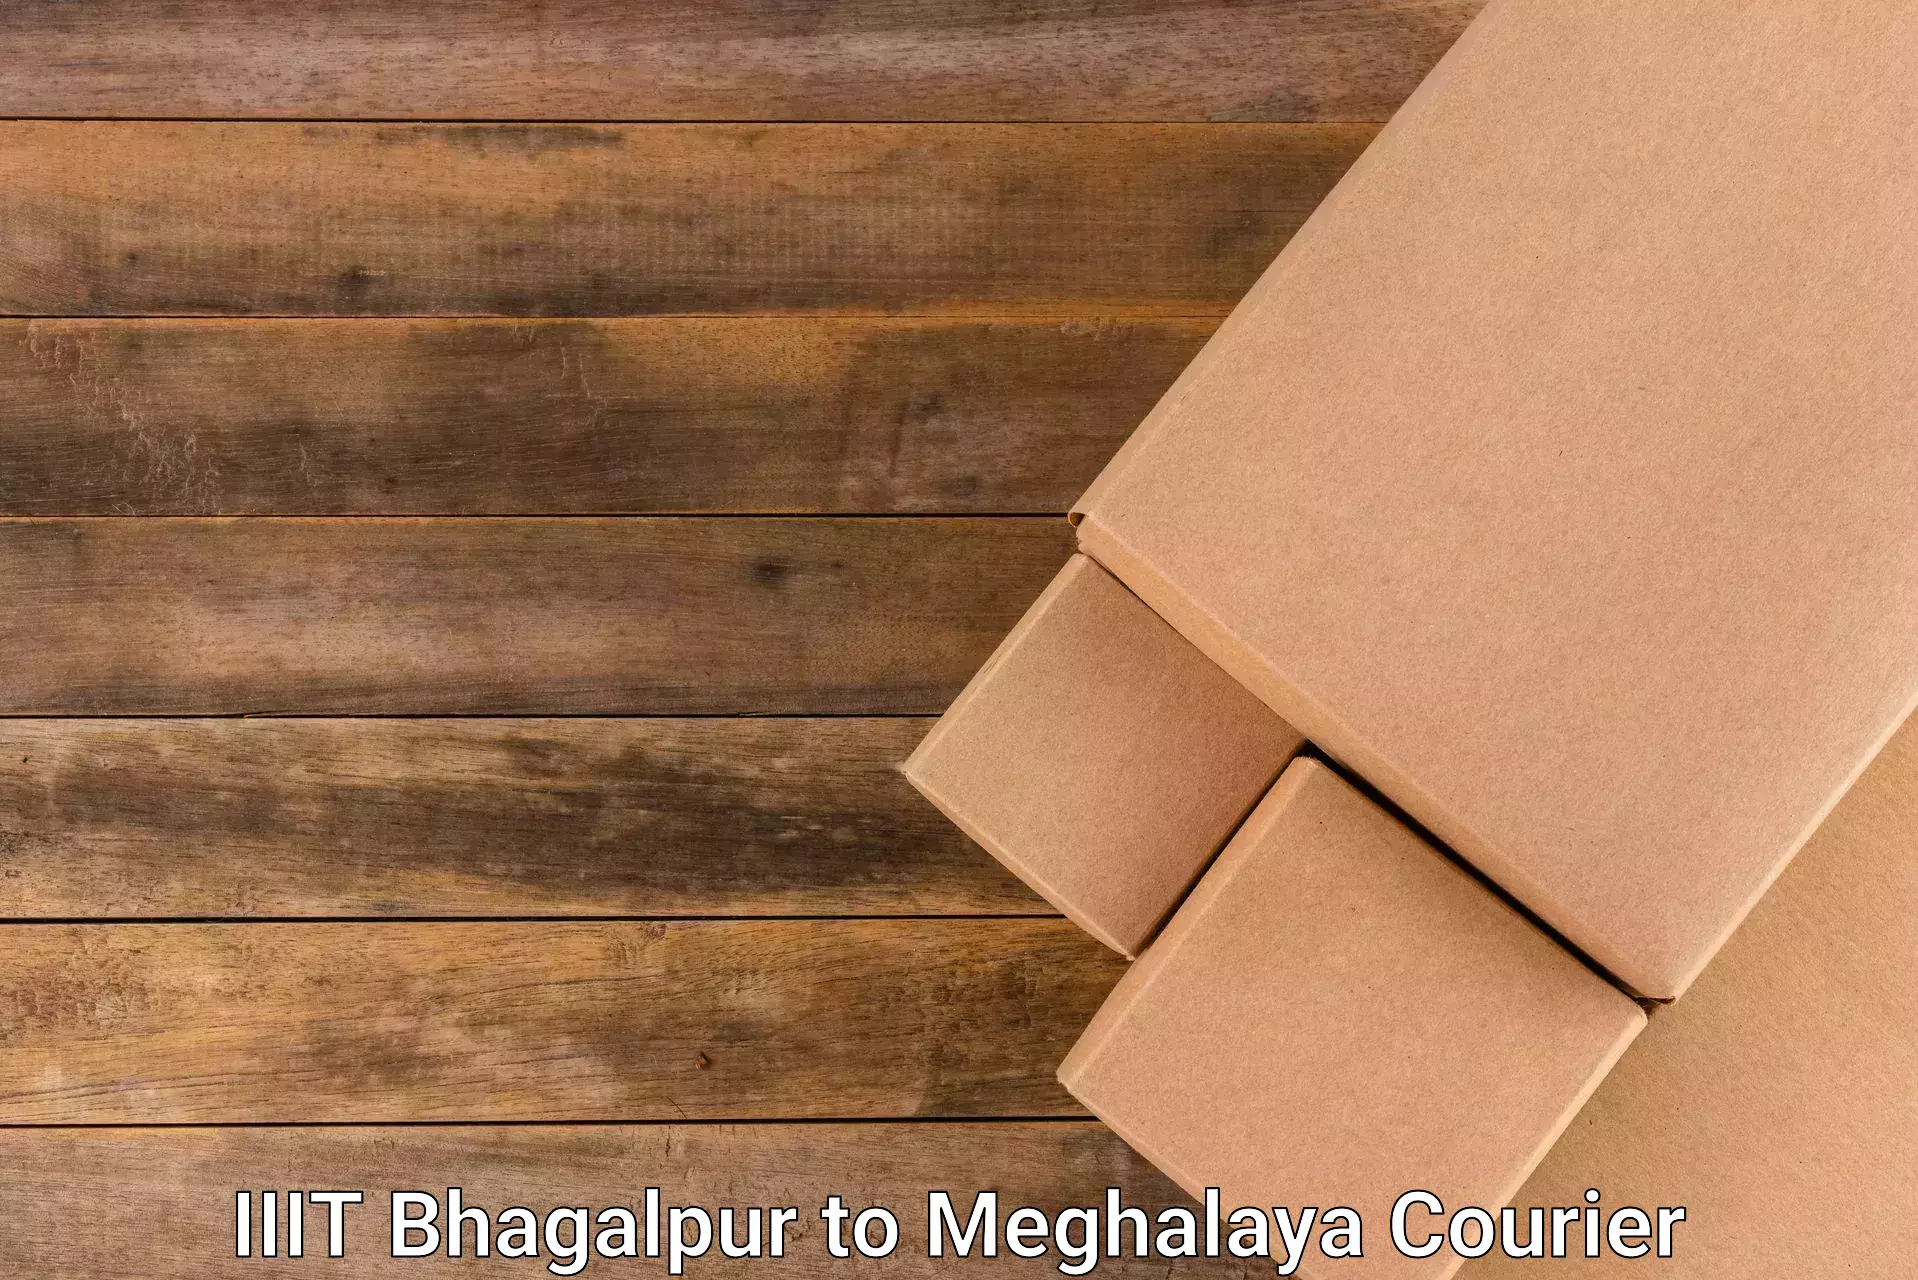 Efficient shipping platforms IIIT Bhagalpur to Cherrapunji